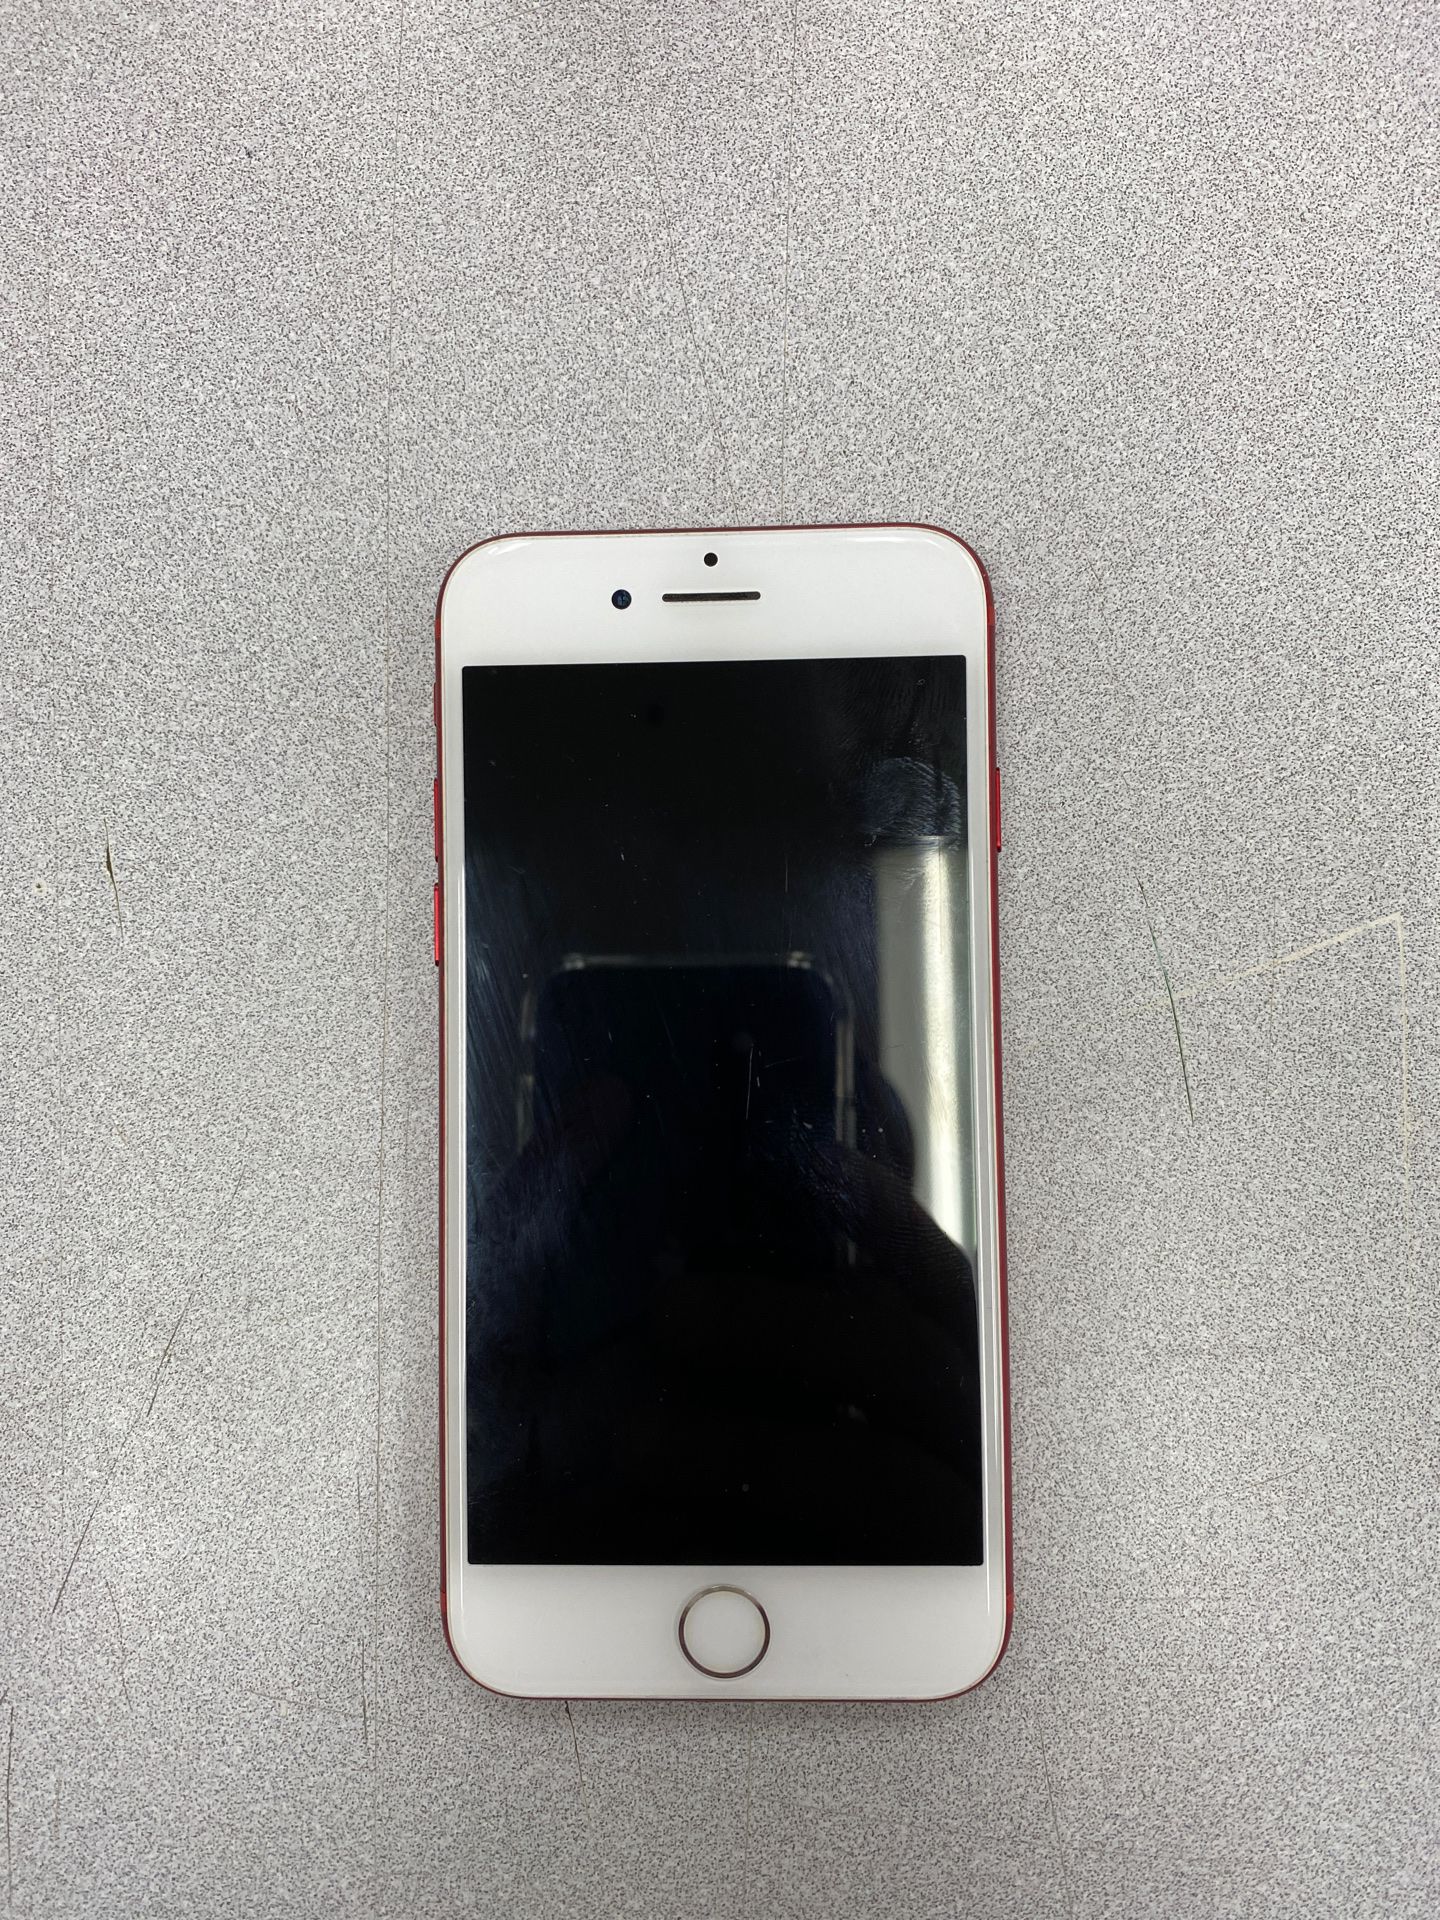 Apple Red iPhone 7 126gb 200 o.b.o